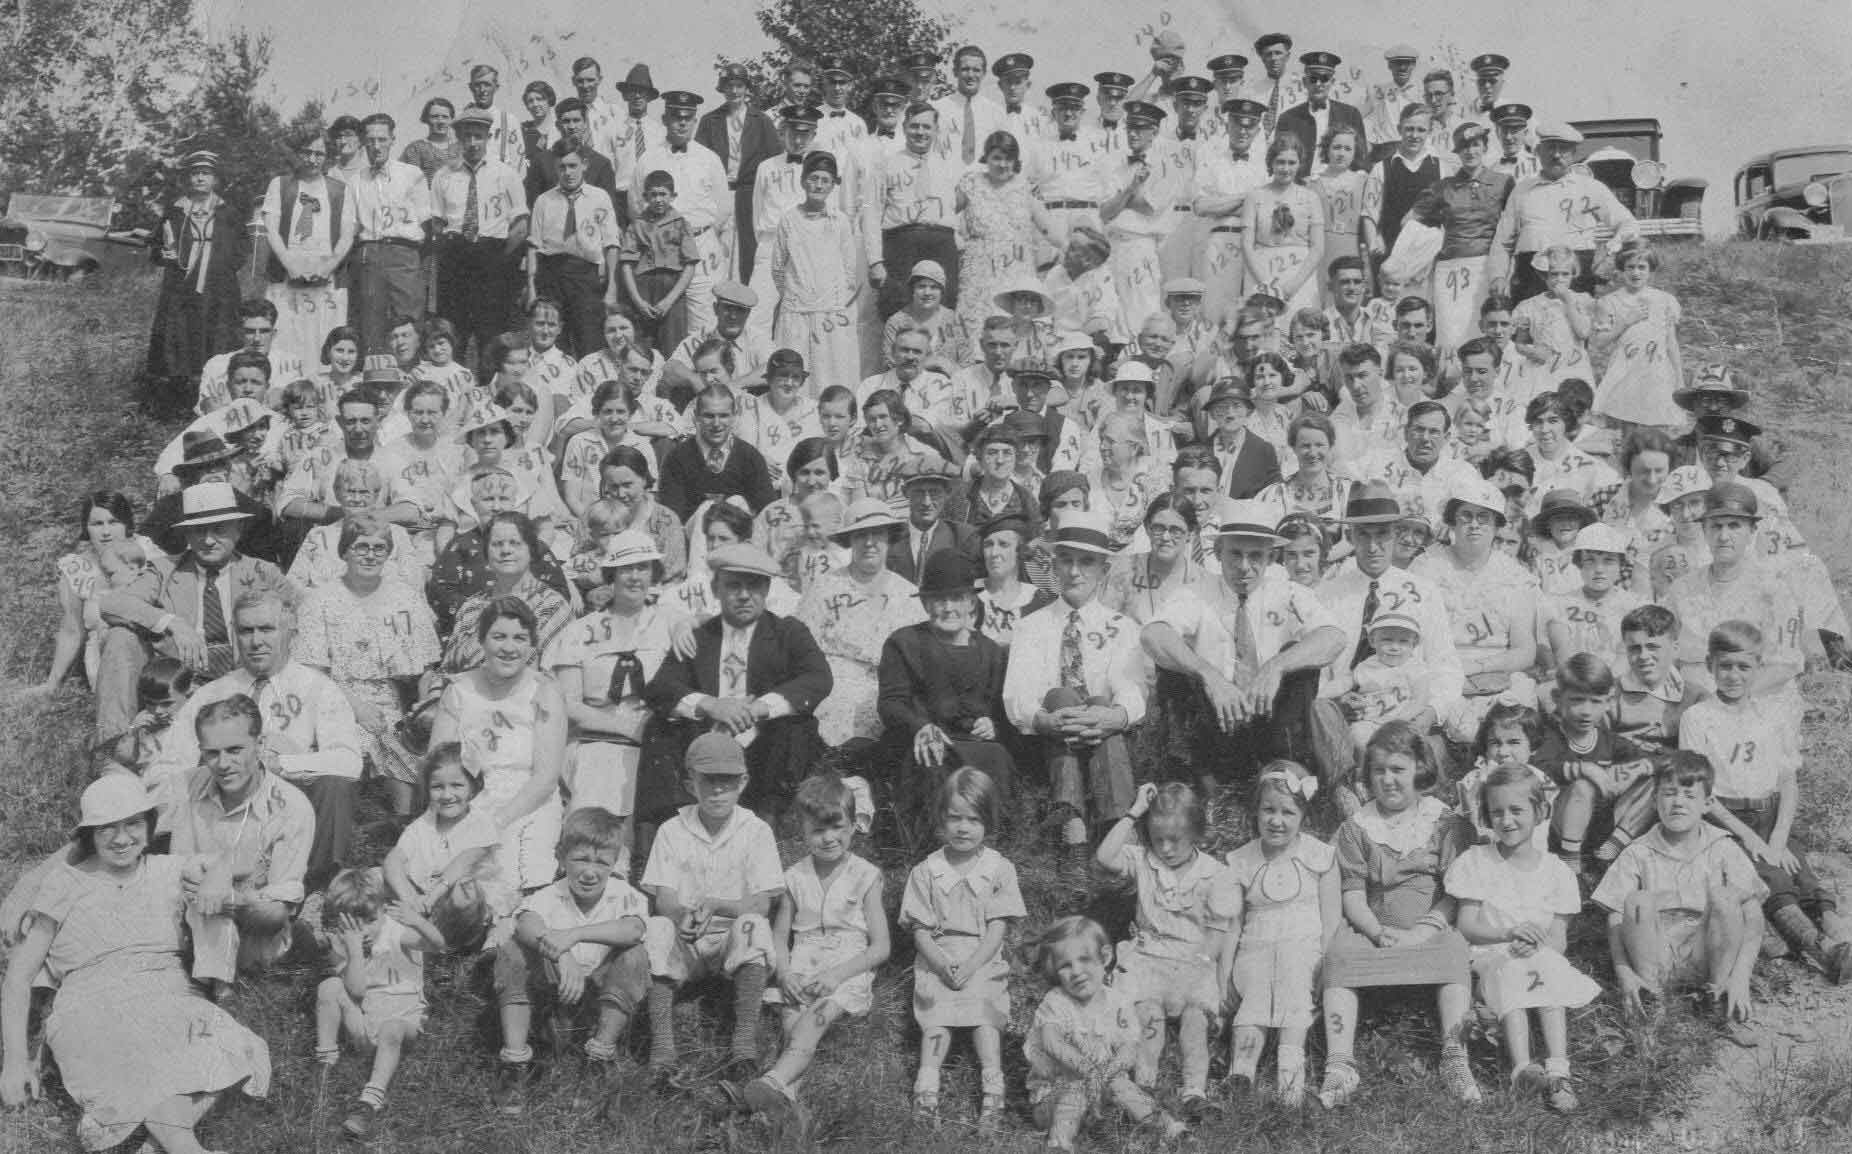 1934 Church Reunion Photo